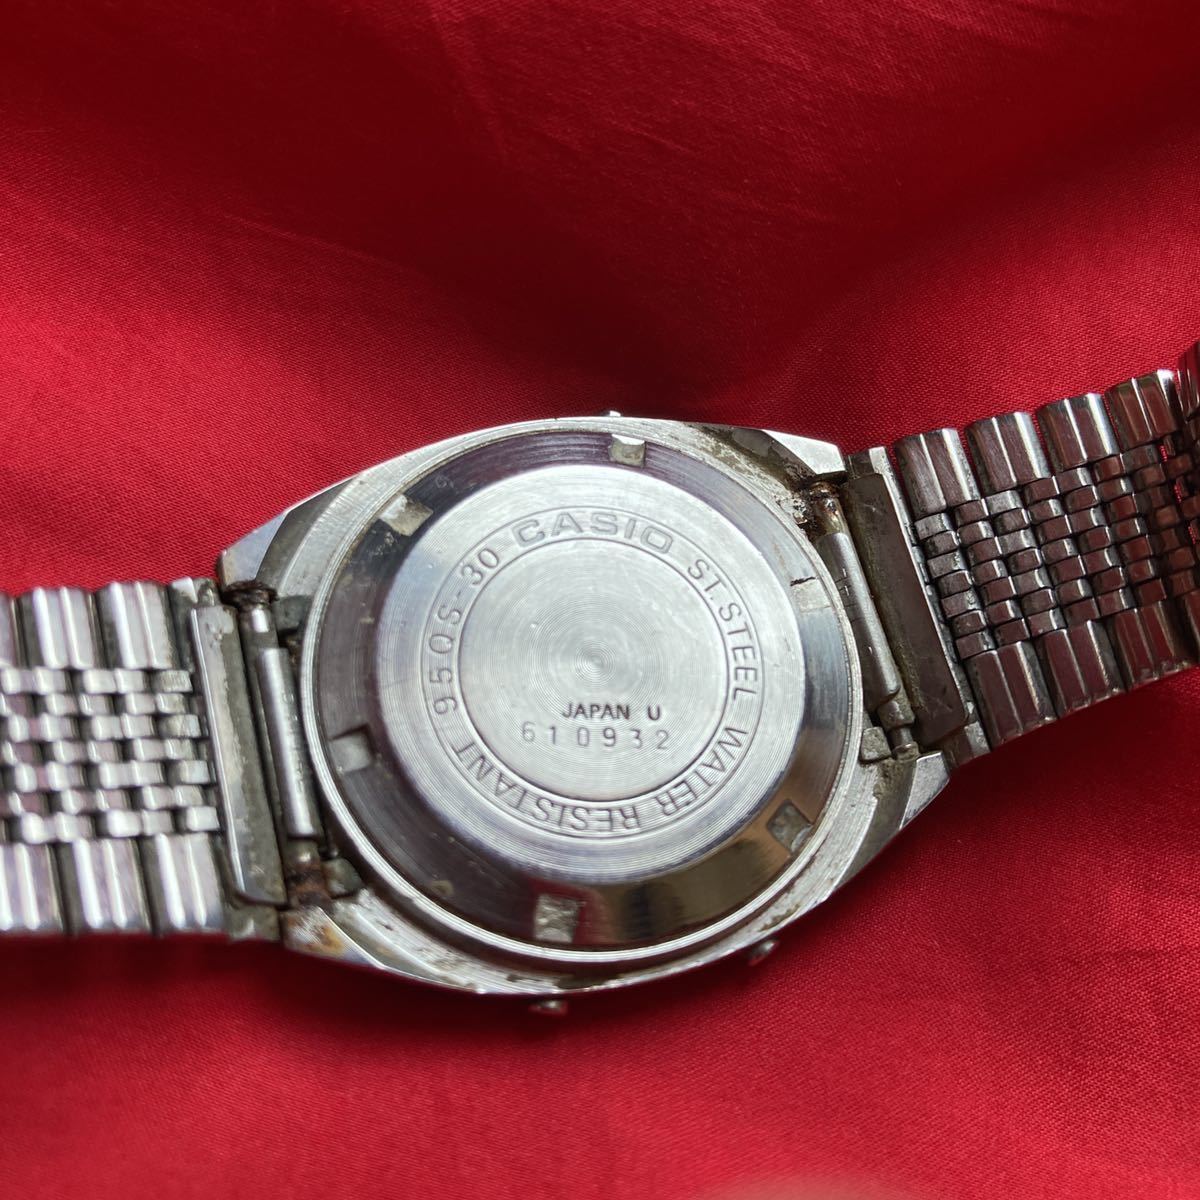 ★即決有★当時品 ヴィンテージ カシオ 950S-30 カシオ腕時計 ジャンク品 裏蓋 スクリューバック レトロ腕時計 カシオデジタル腕時計 CASIO_画像2